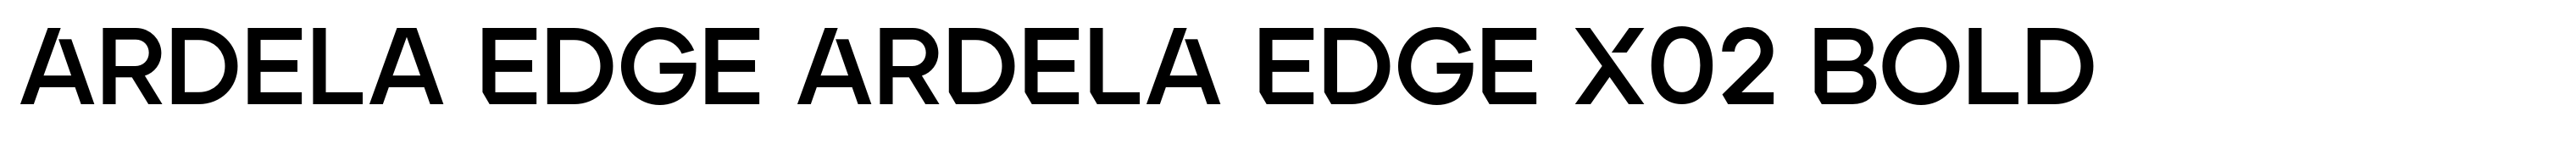 Ardela Edge ARDELA EDGE X02 Bold